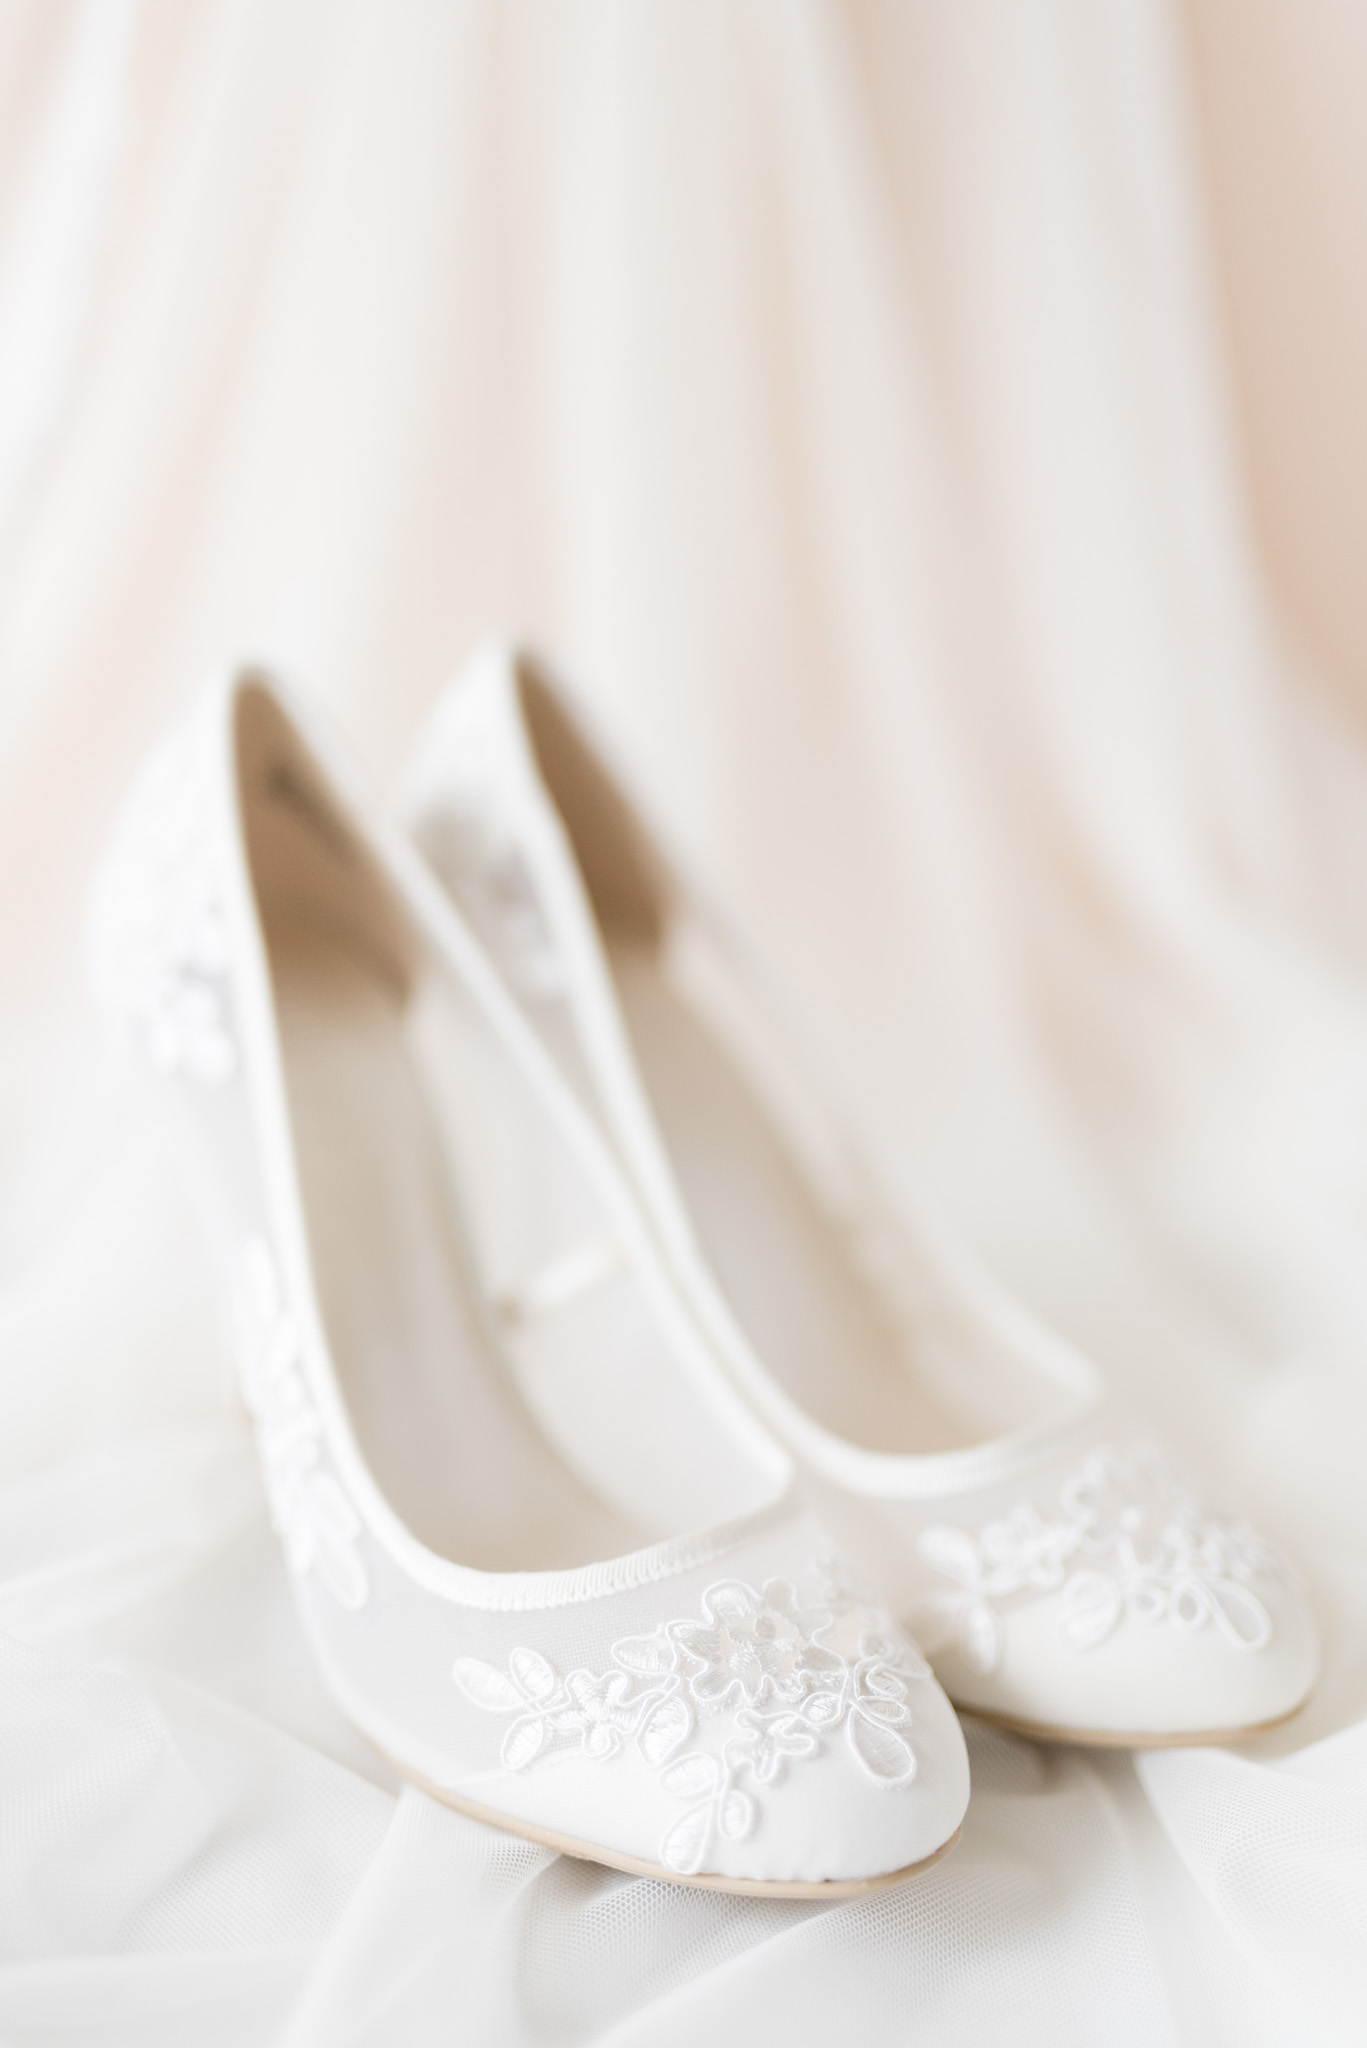 Bride's lace shoes sit on veil.